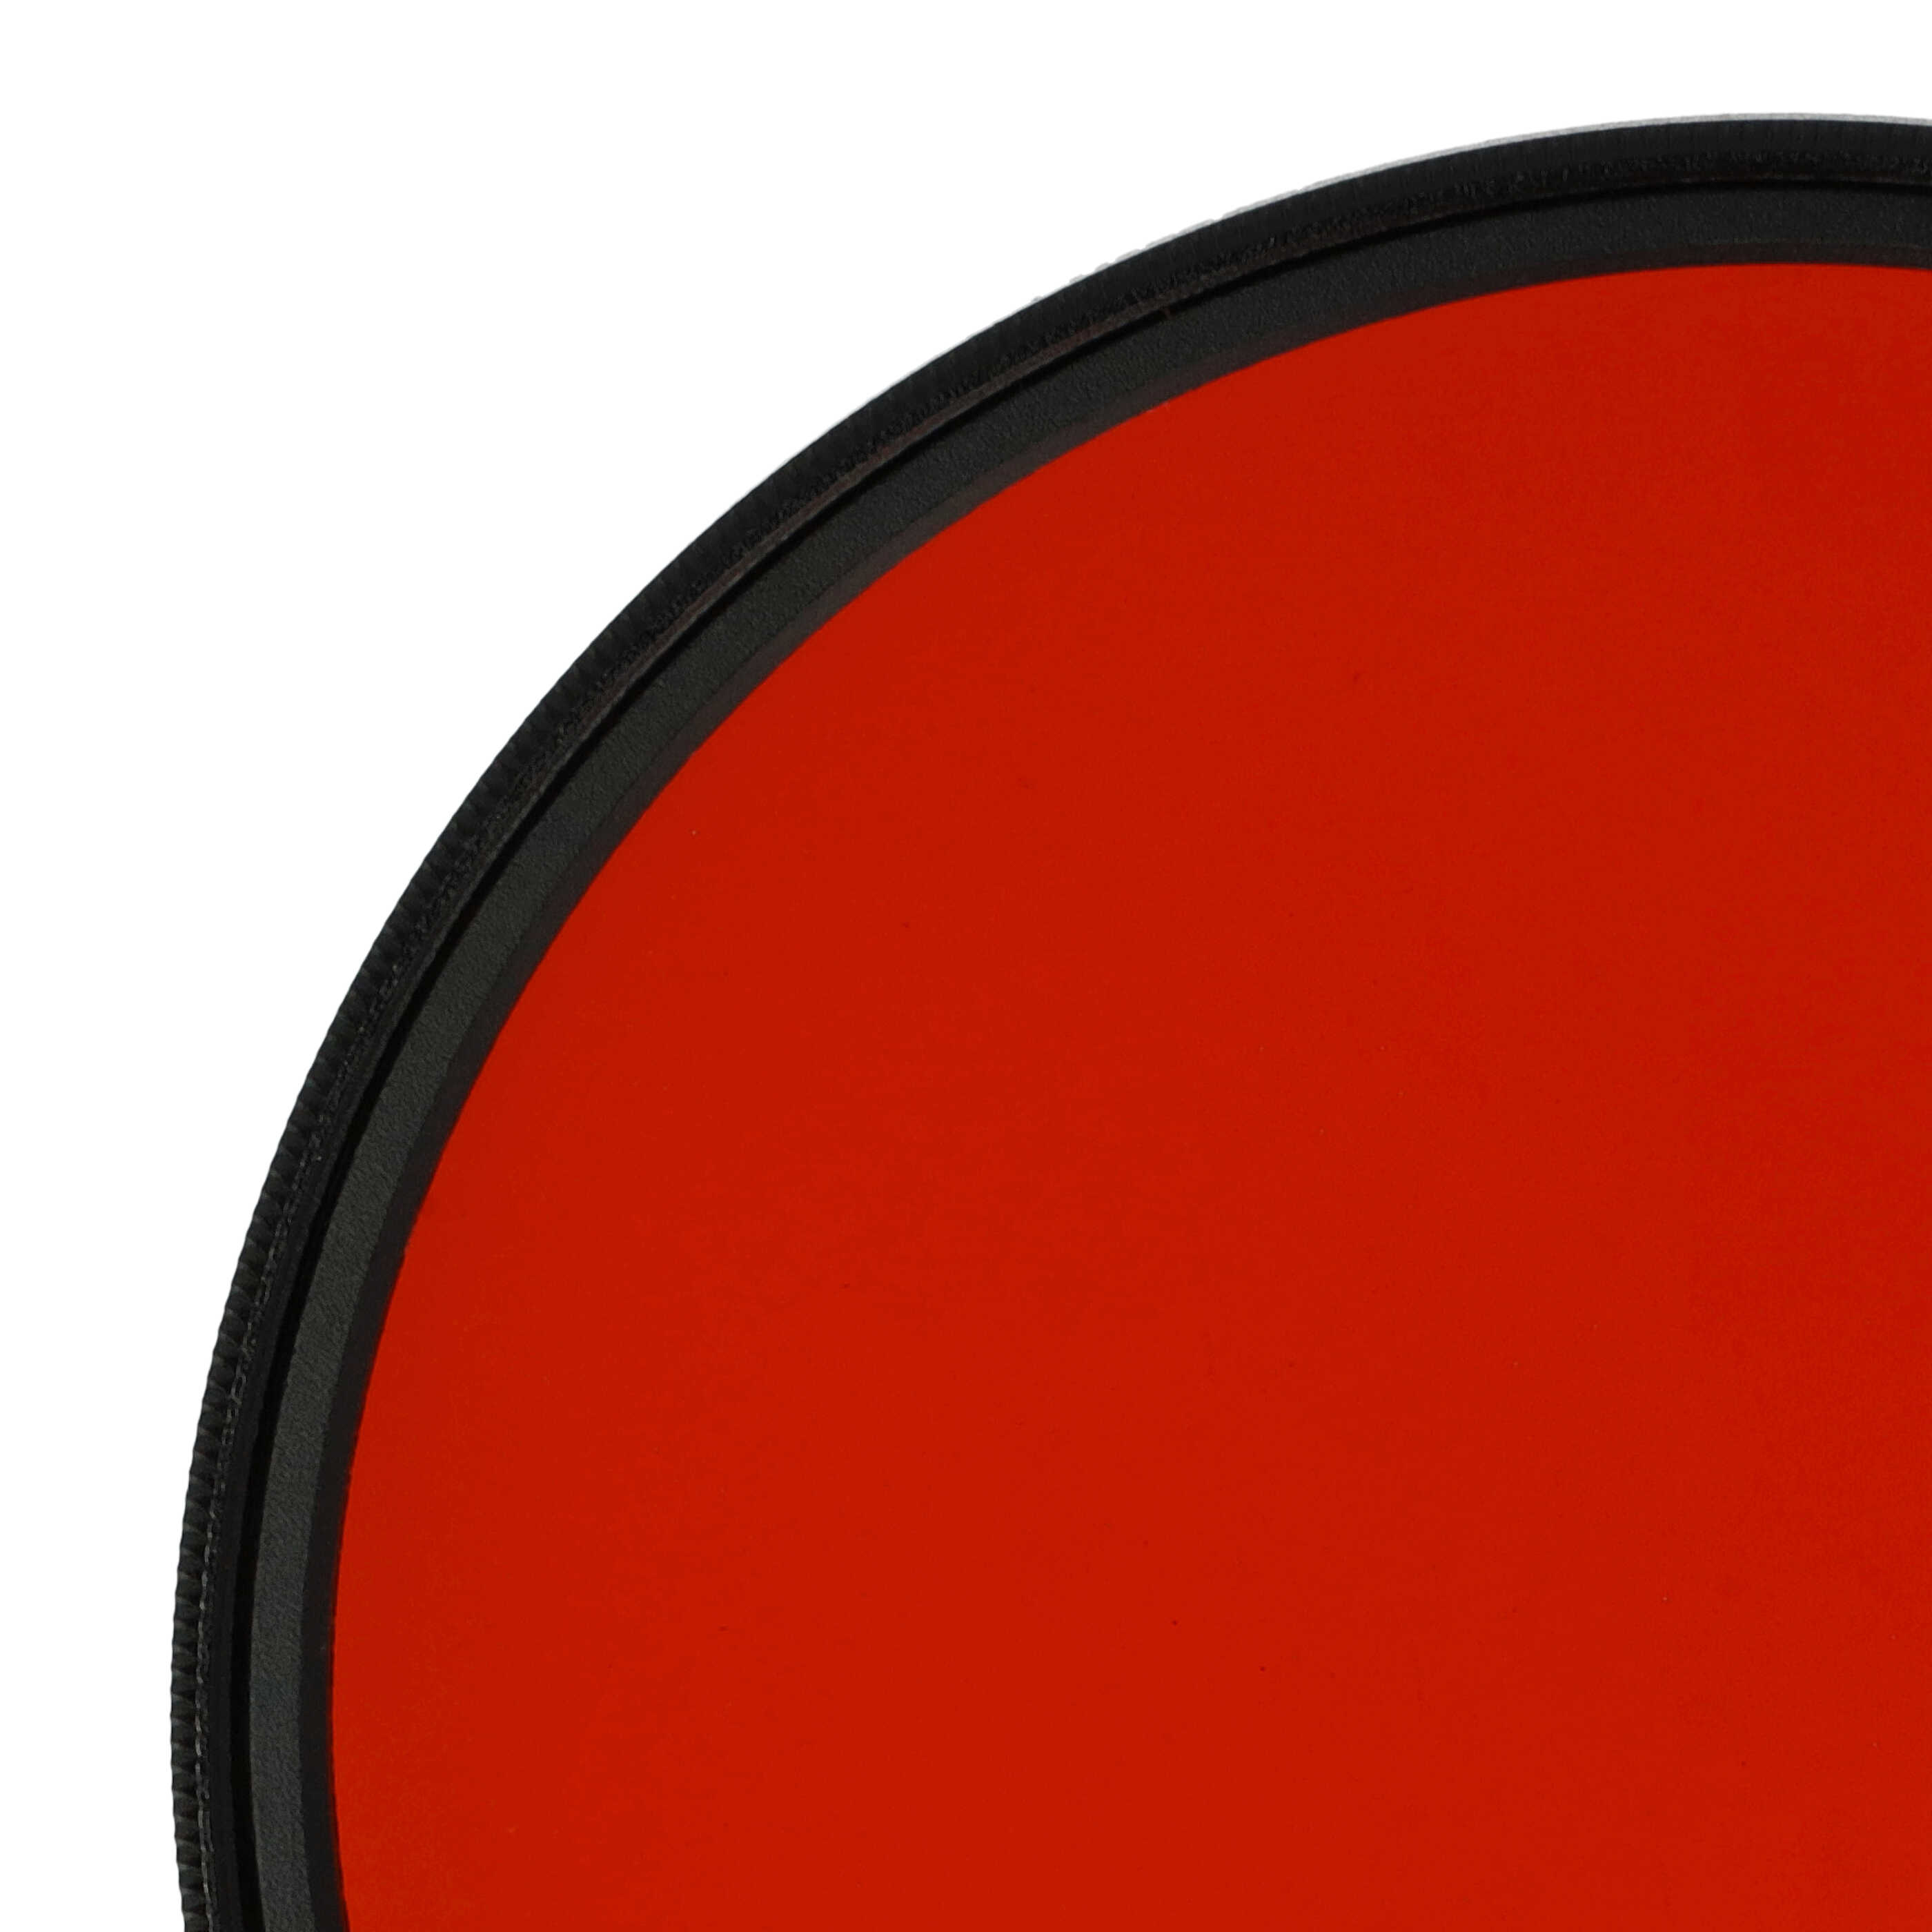 Filtre de couleur orange pour objectifs d'appareils photo de 77 mm - Filtre orange